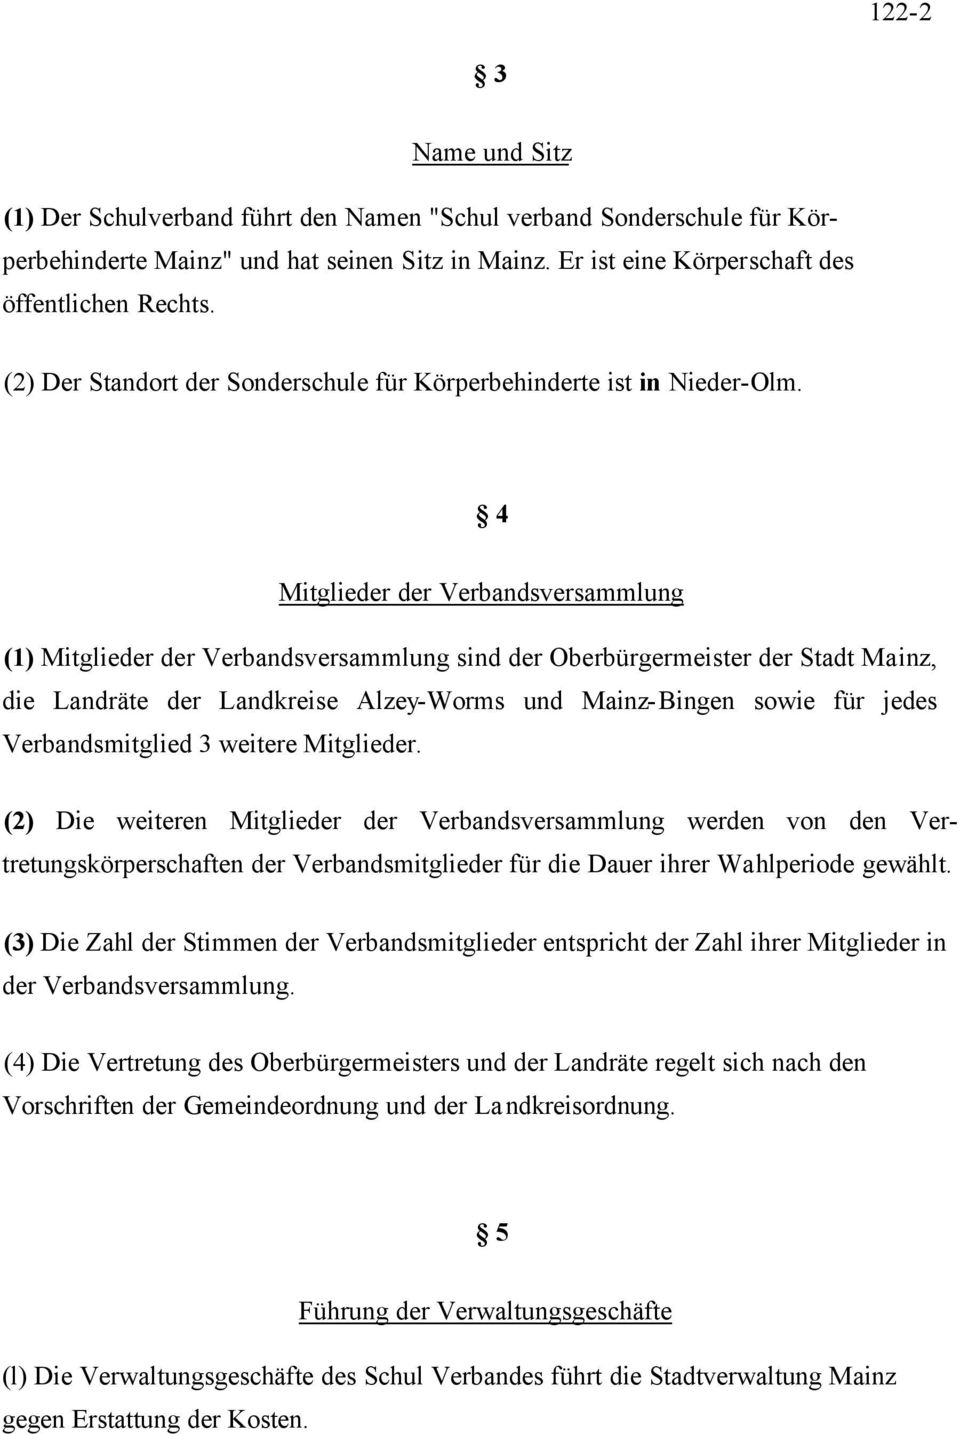 4 Mitglieder der Verbandsversammlung (1) Mitglieder der Verbandsversammlung sind der Oberbürgermeister der Stadt Mainz, die Landräte der Landkreise Alzey-Worms und Mainz-Bingen sowie für jedes